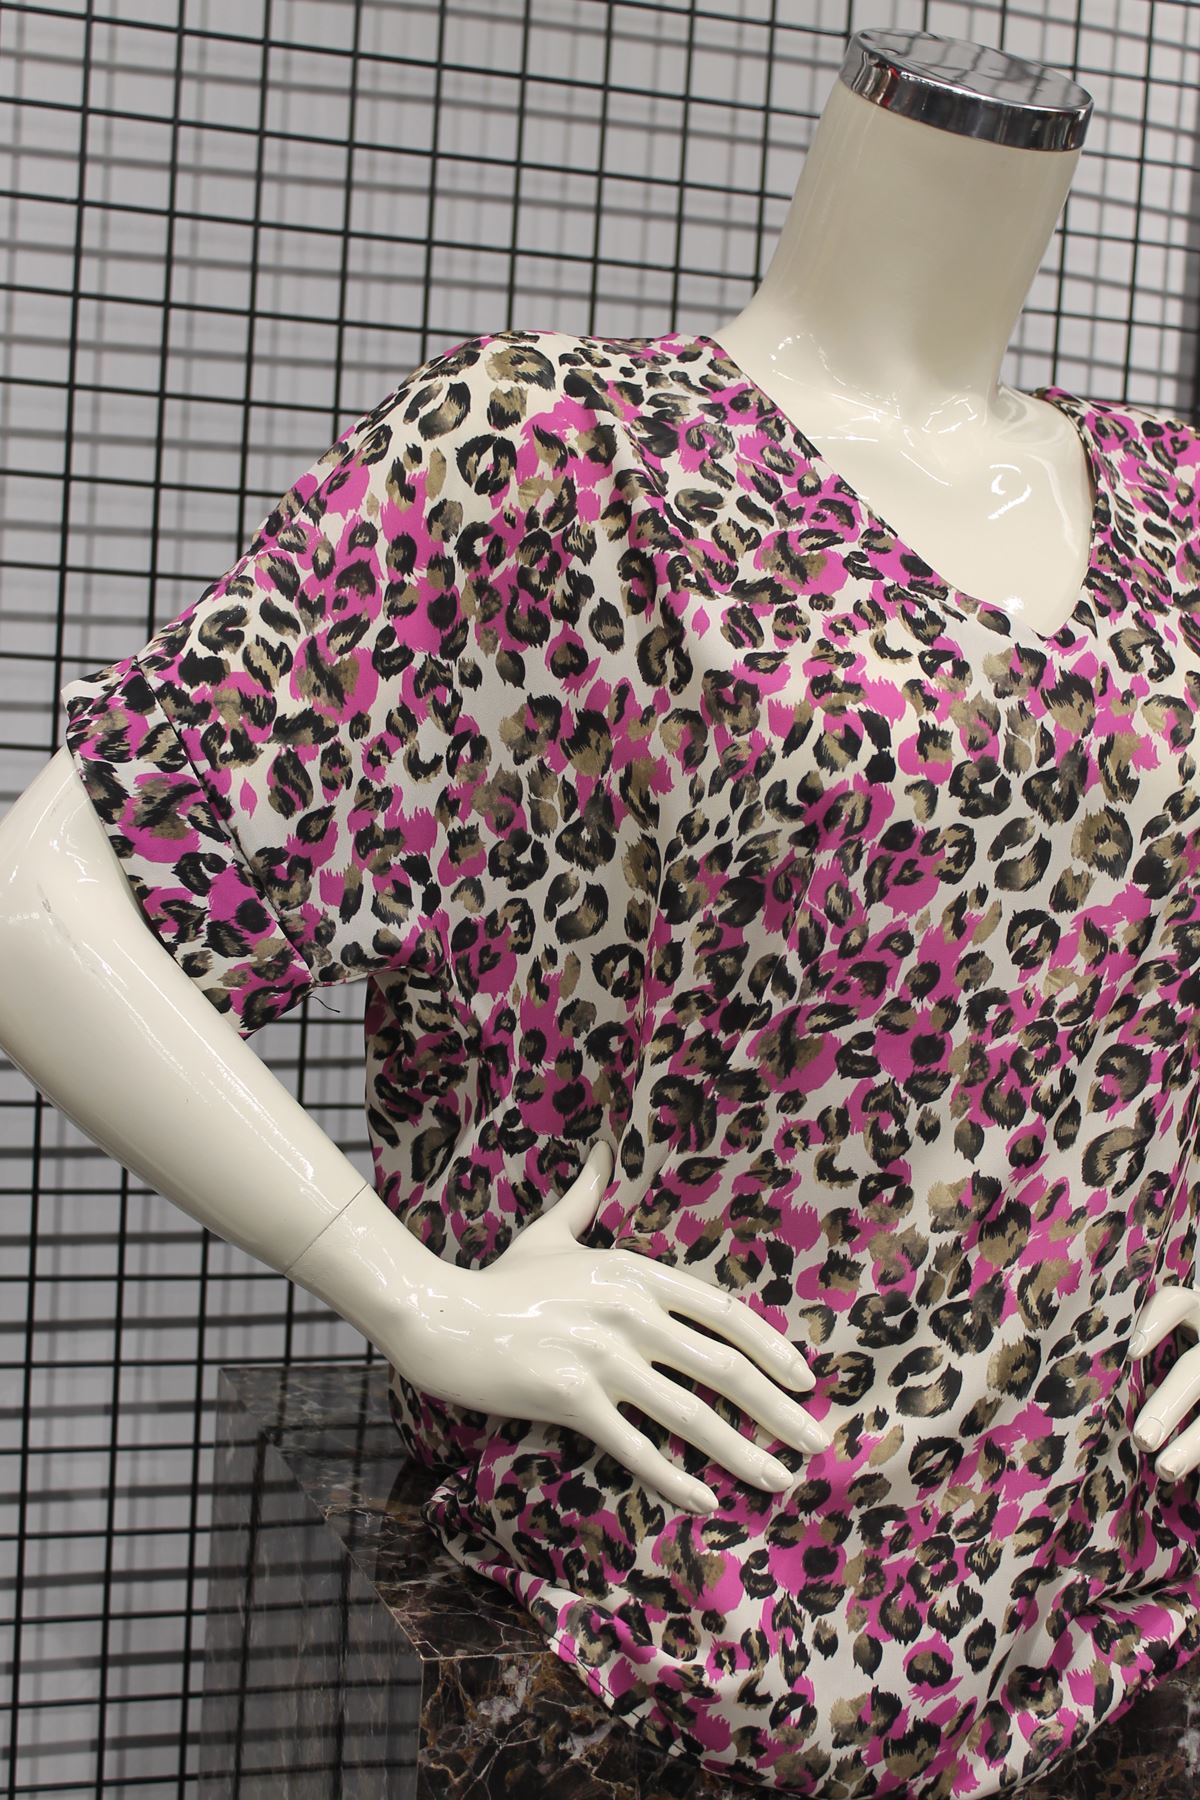 джессика ткань V-образный вырез леопардовая женская блузка - фуксия